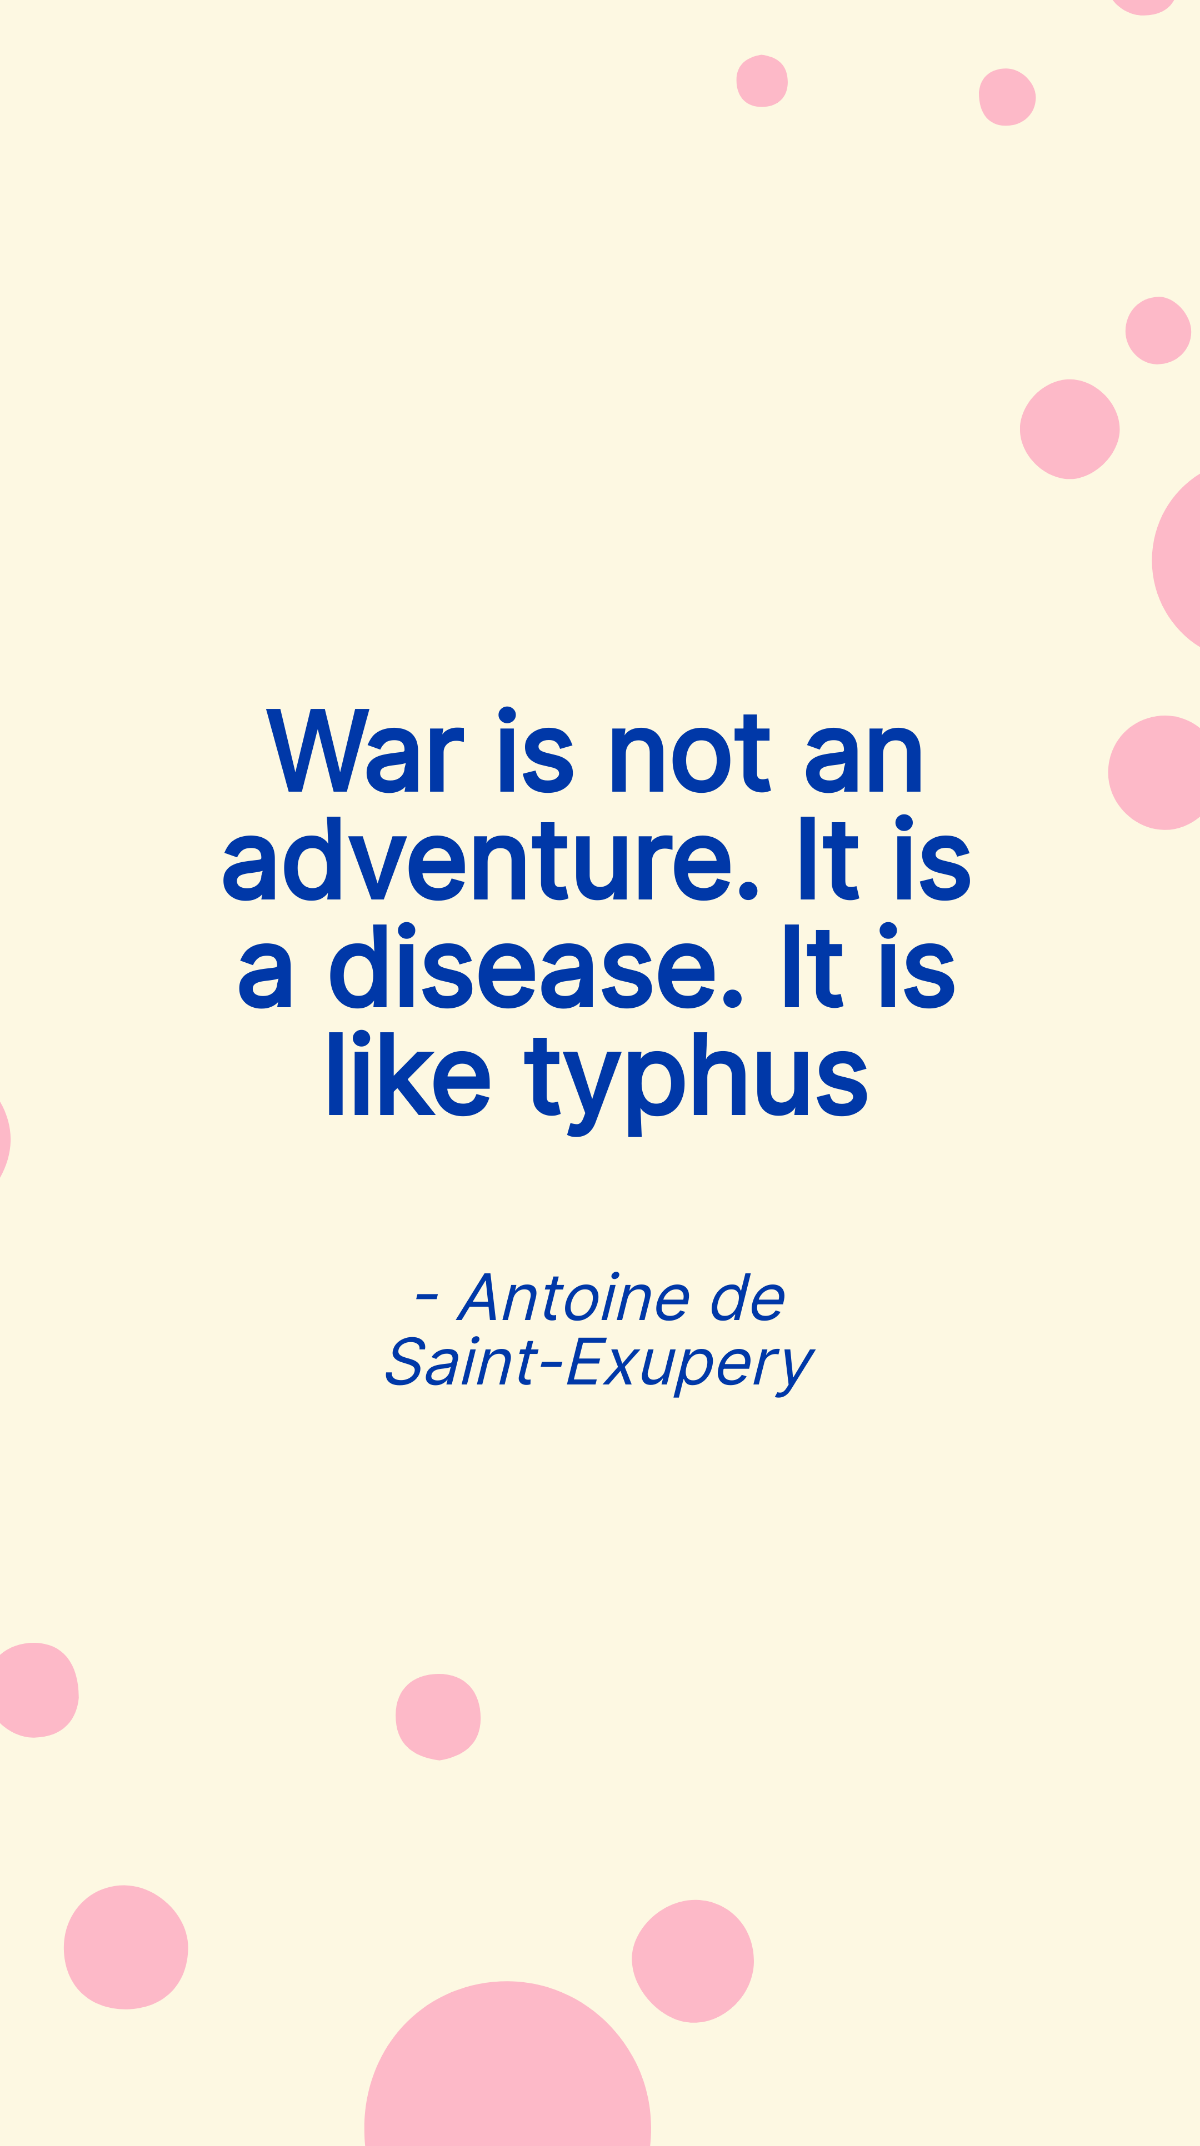 Antoine de Saint-Exupery - War is not an adventure. It is a disease. It is like typhus Template